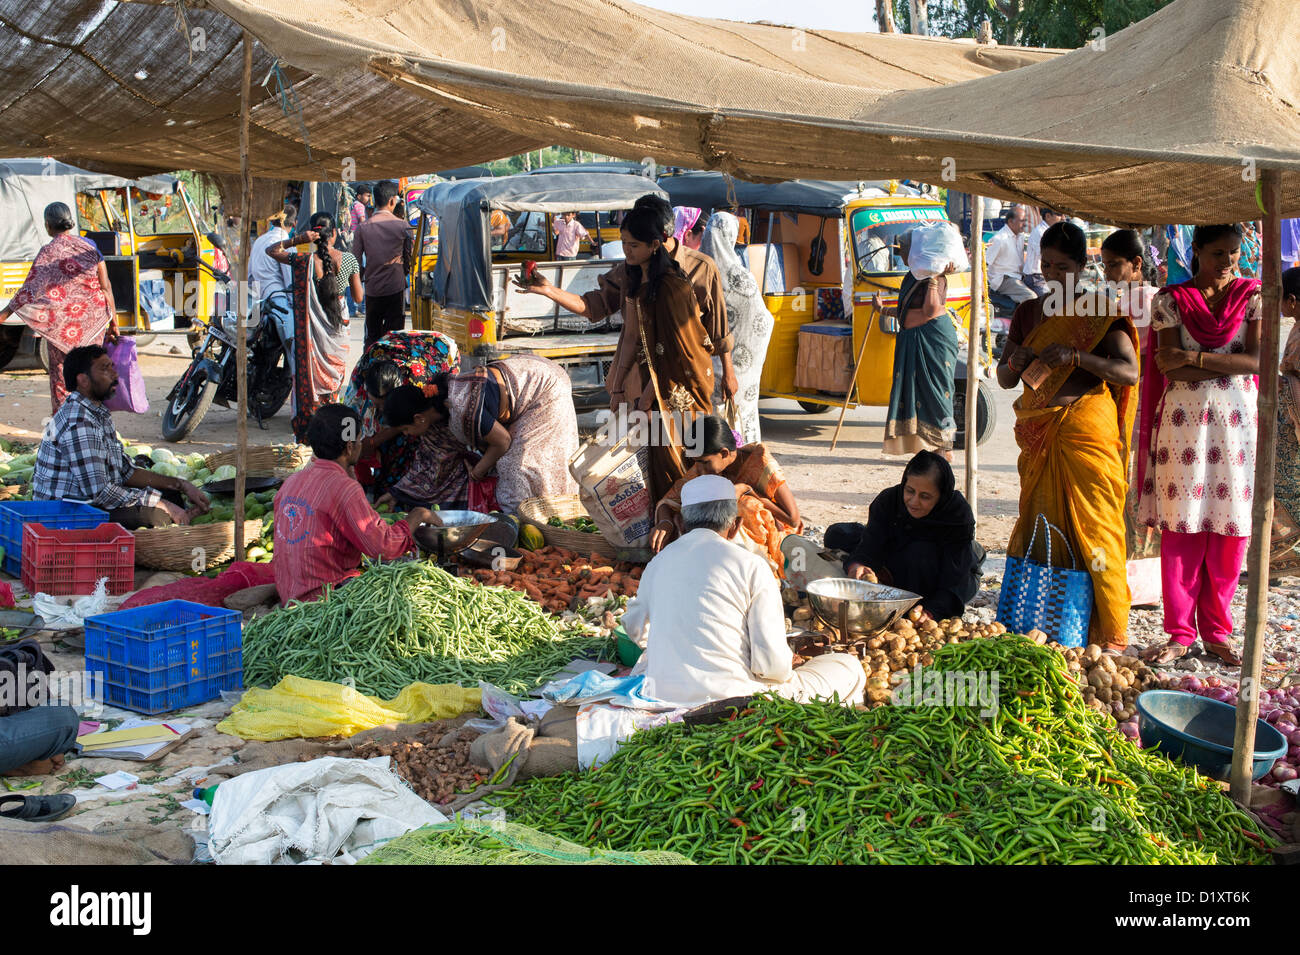 Les femmes du sud de l'Inde l'achat d'un marché de légumes de la rue indienne. Puttaparthi, Andhra Pradesh, Inde Banque D'Images